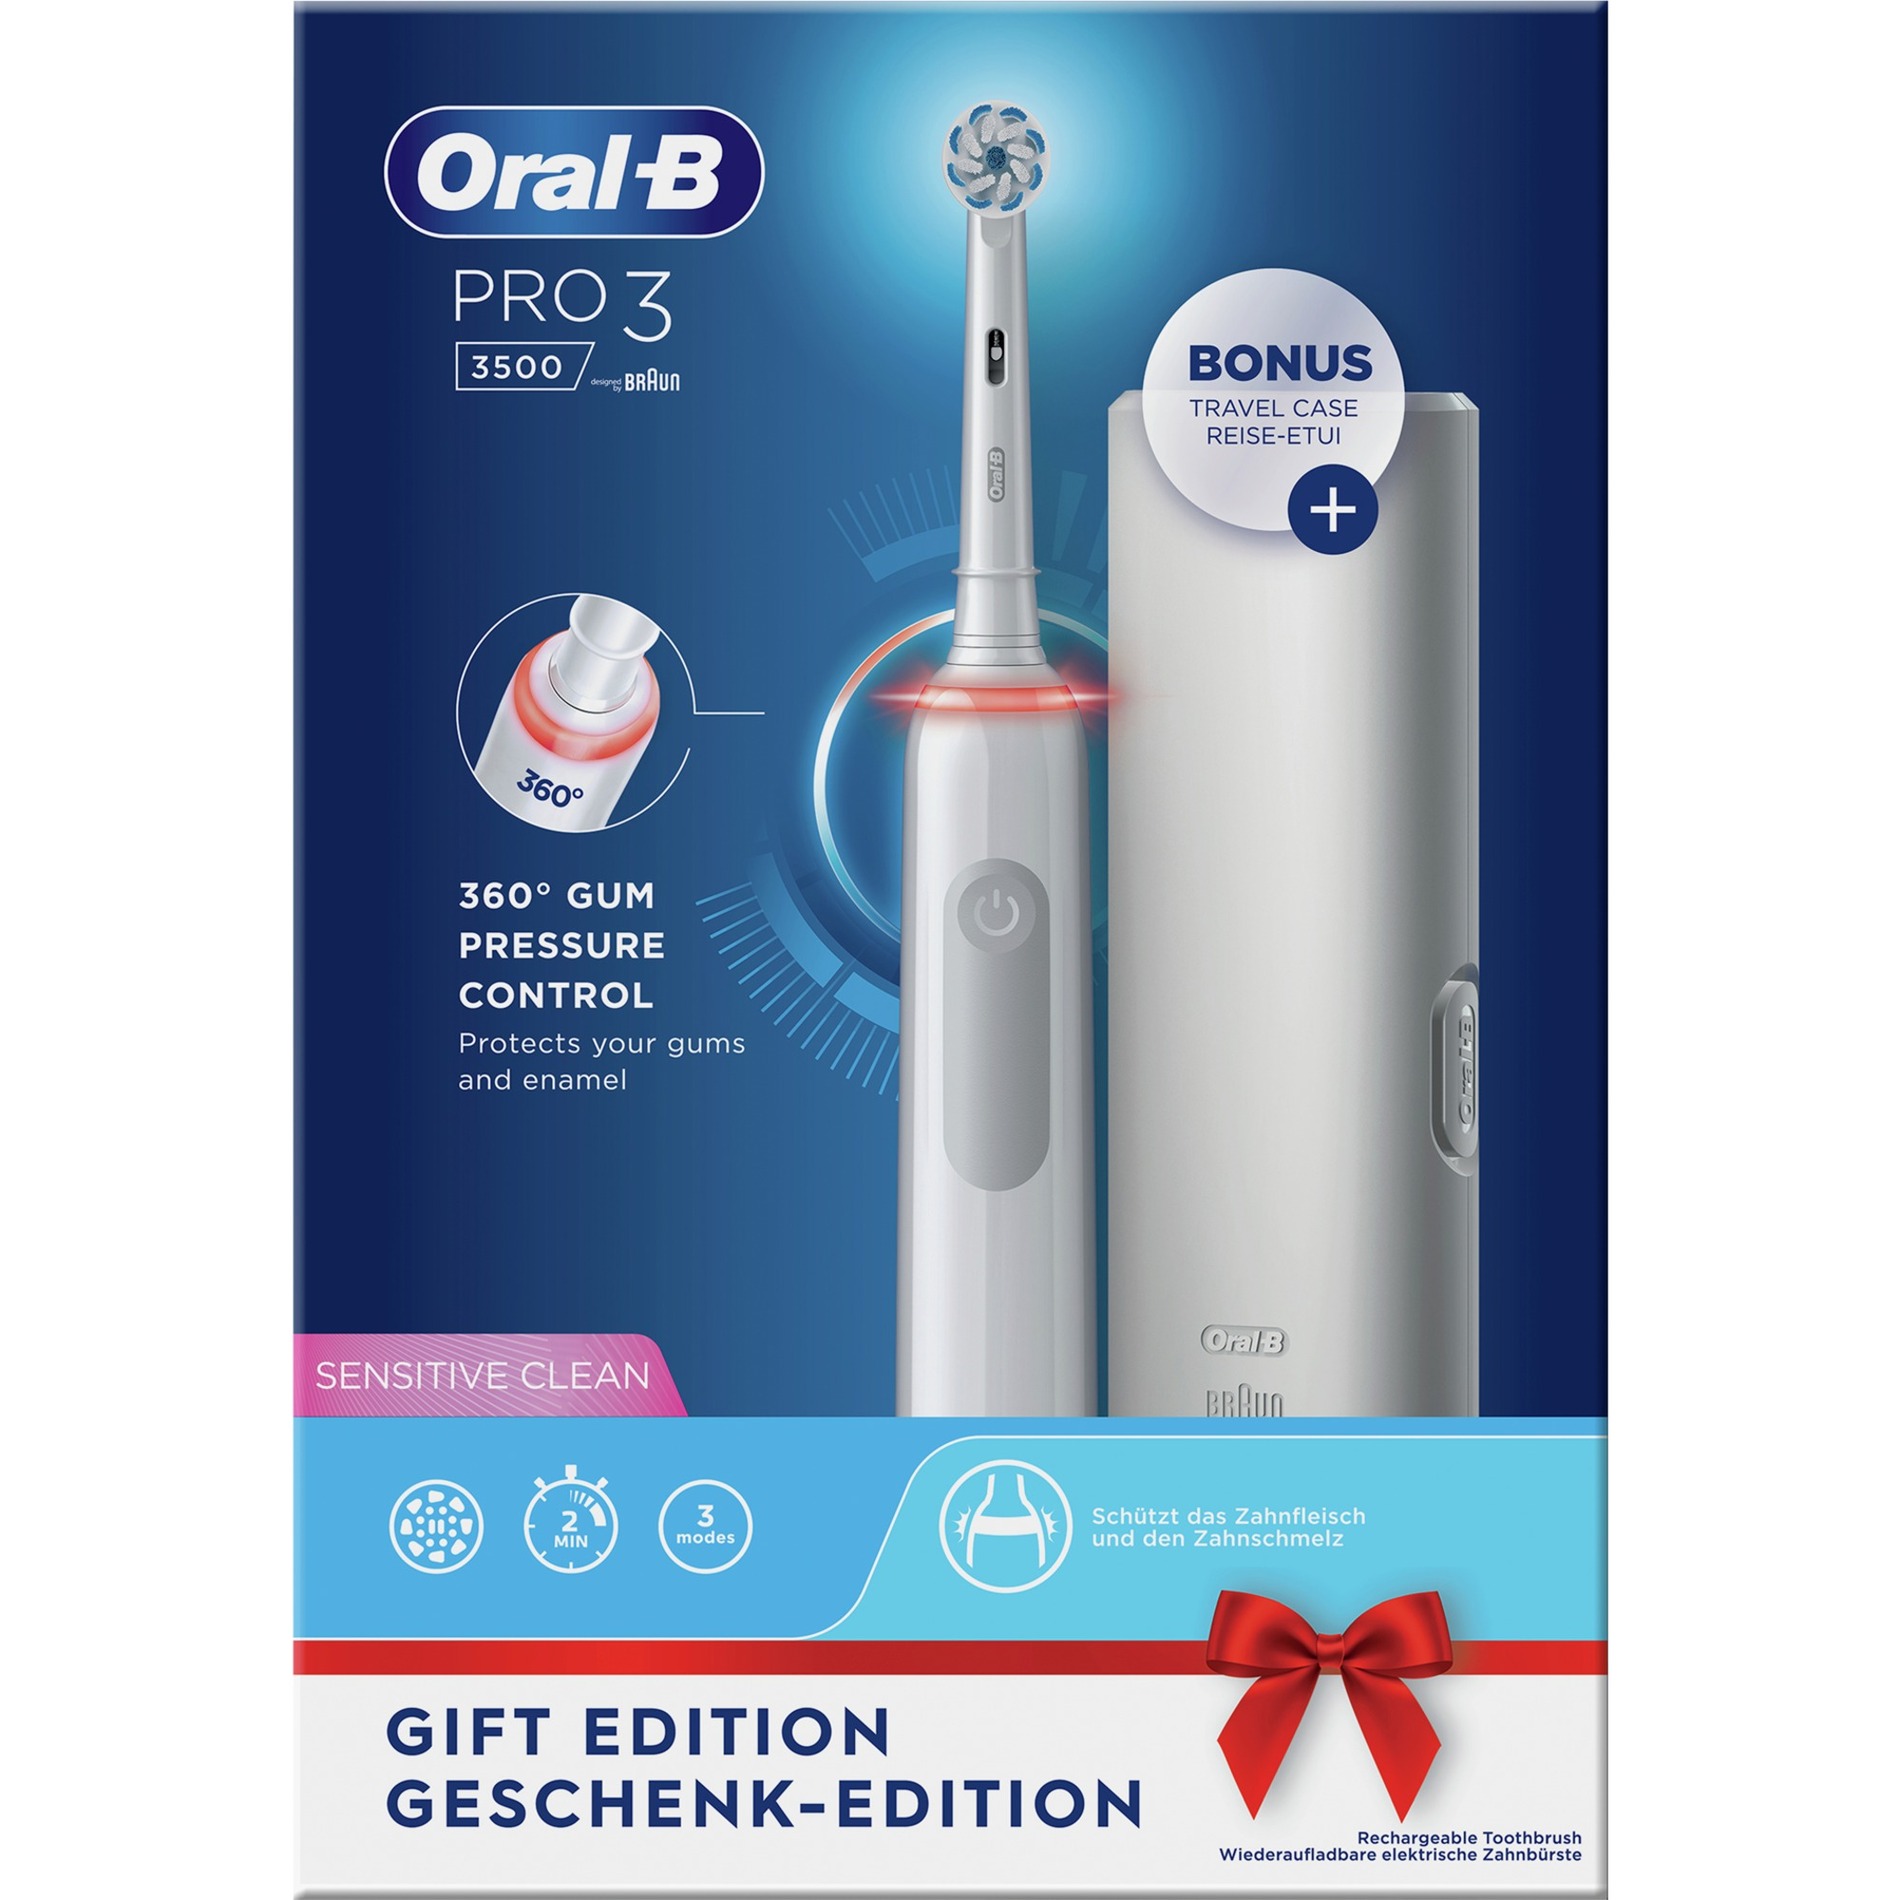 Image of Alternate - Oral-B Pro 3 3500, Elektrische Zahnbürste online einkaufen bei Alternate